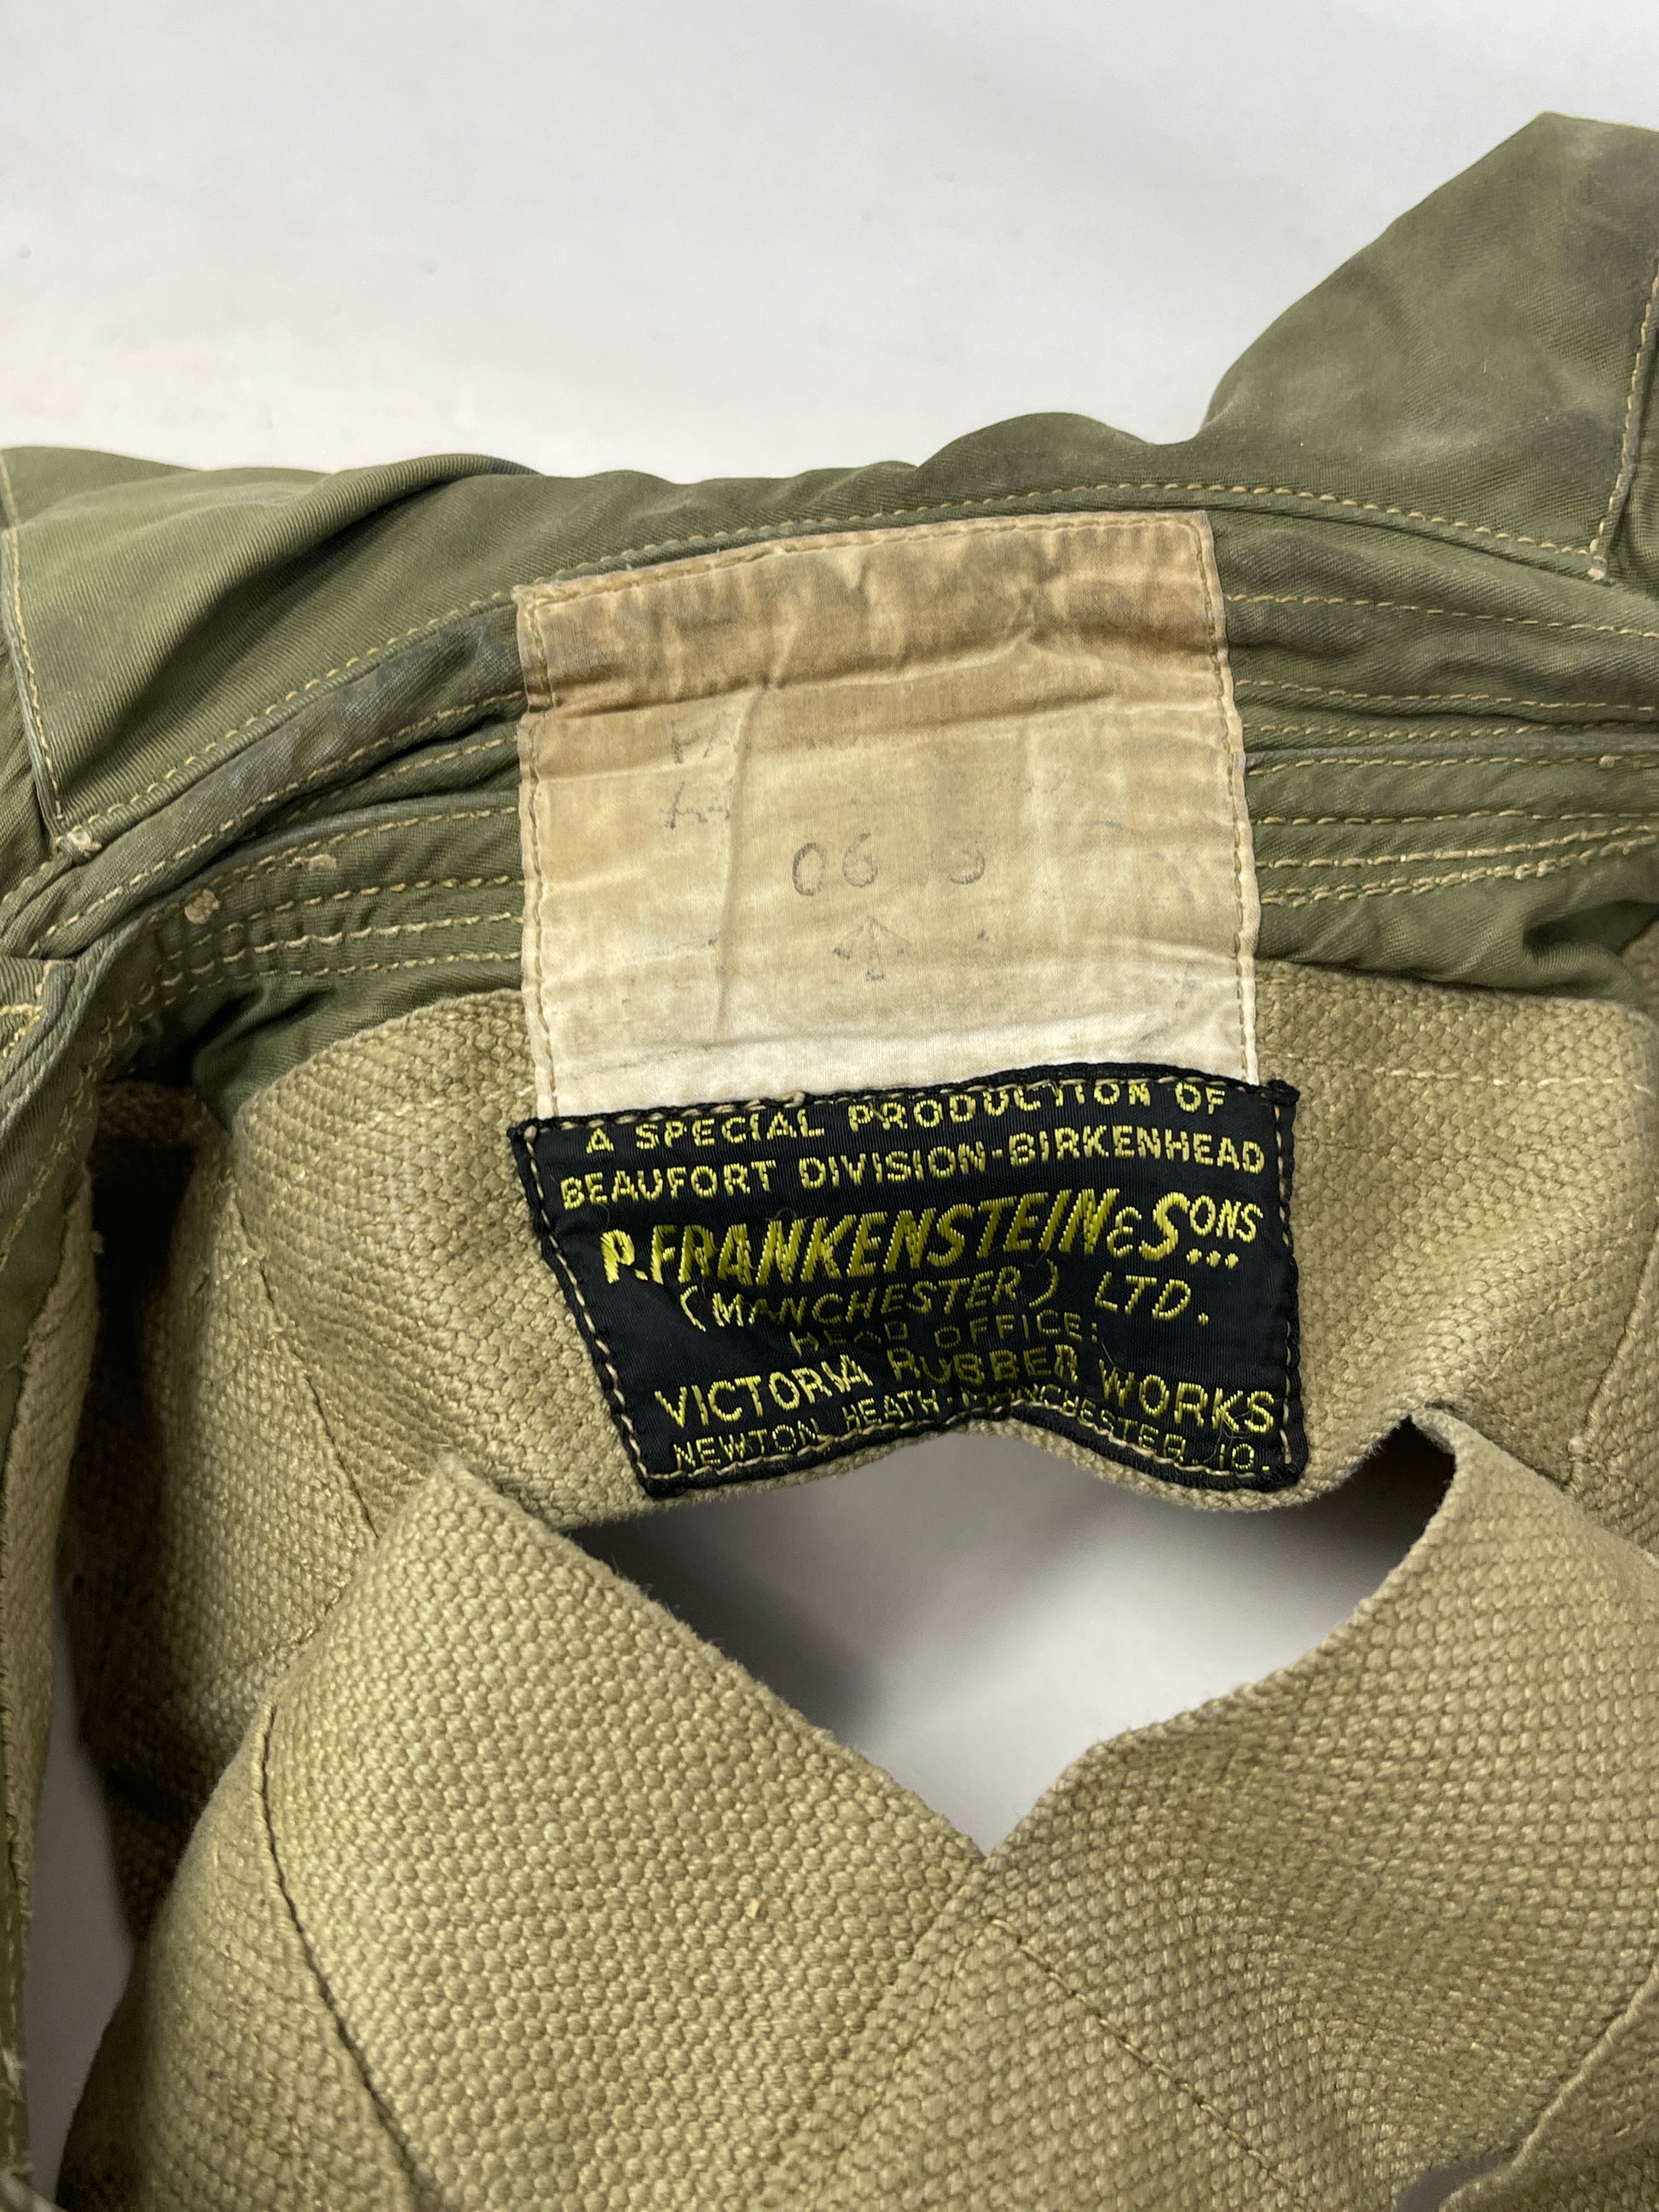 Life Jacket Parachutist P.Frankenstein & Sons